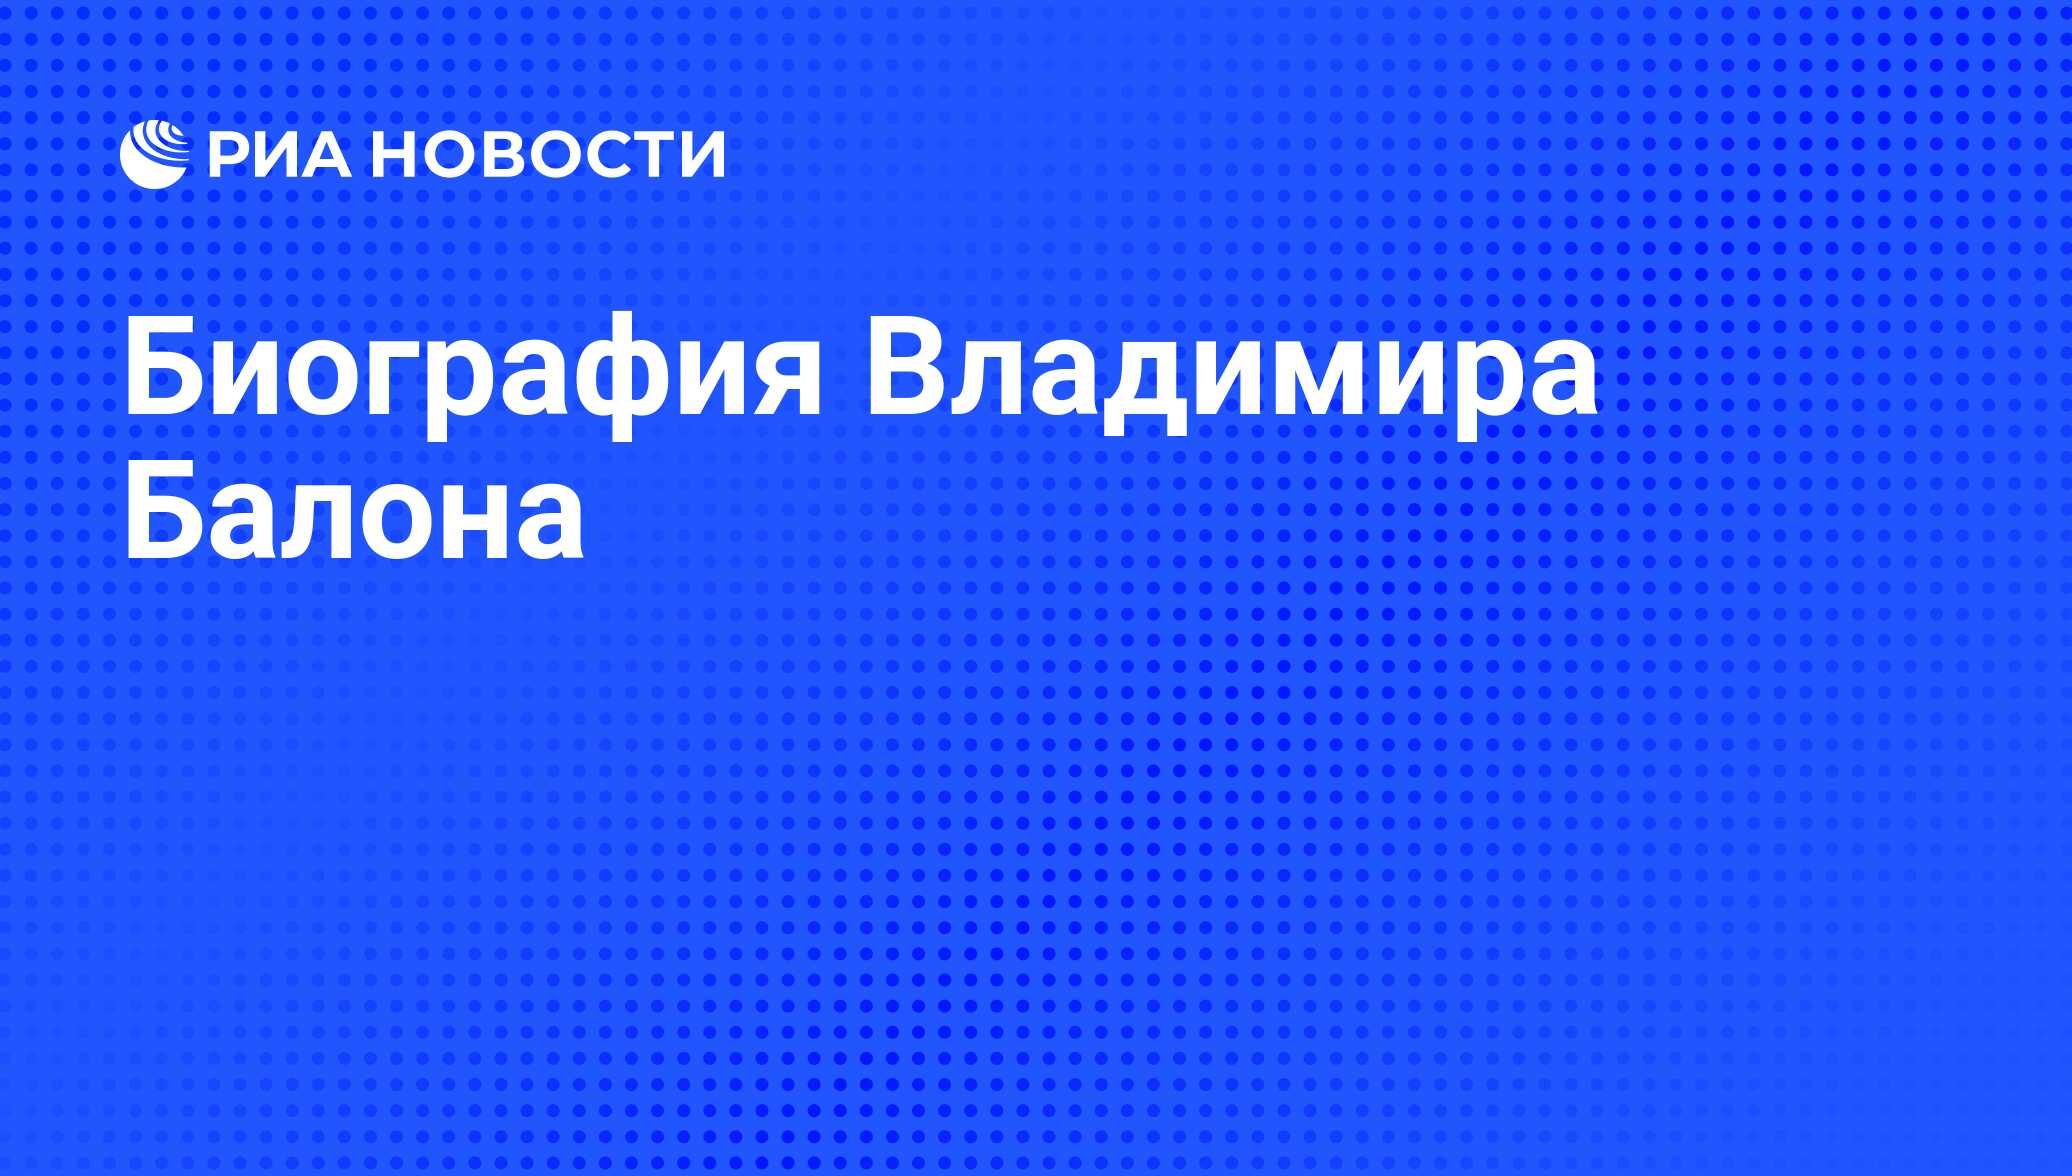 Биография Владимира Балона - РИА Новости, 29.02.2020